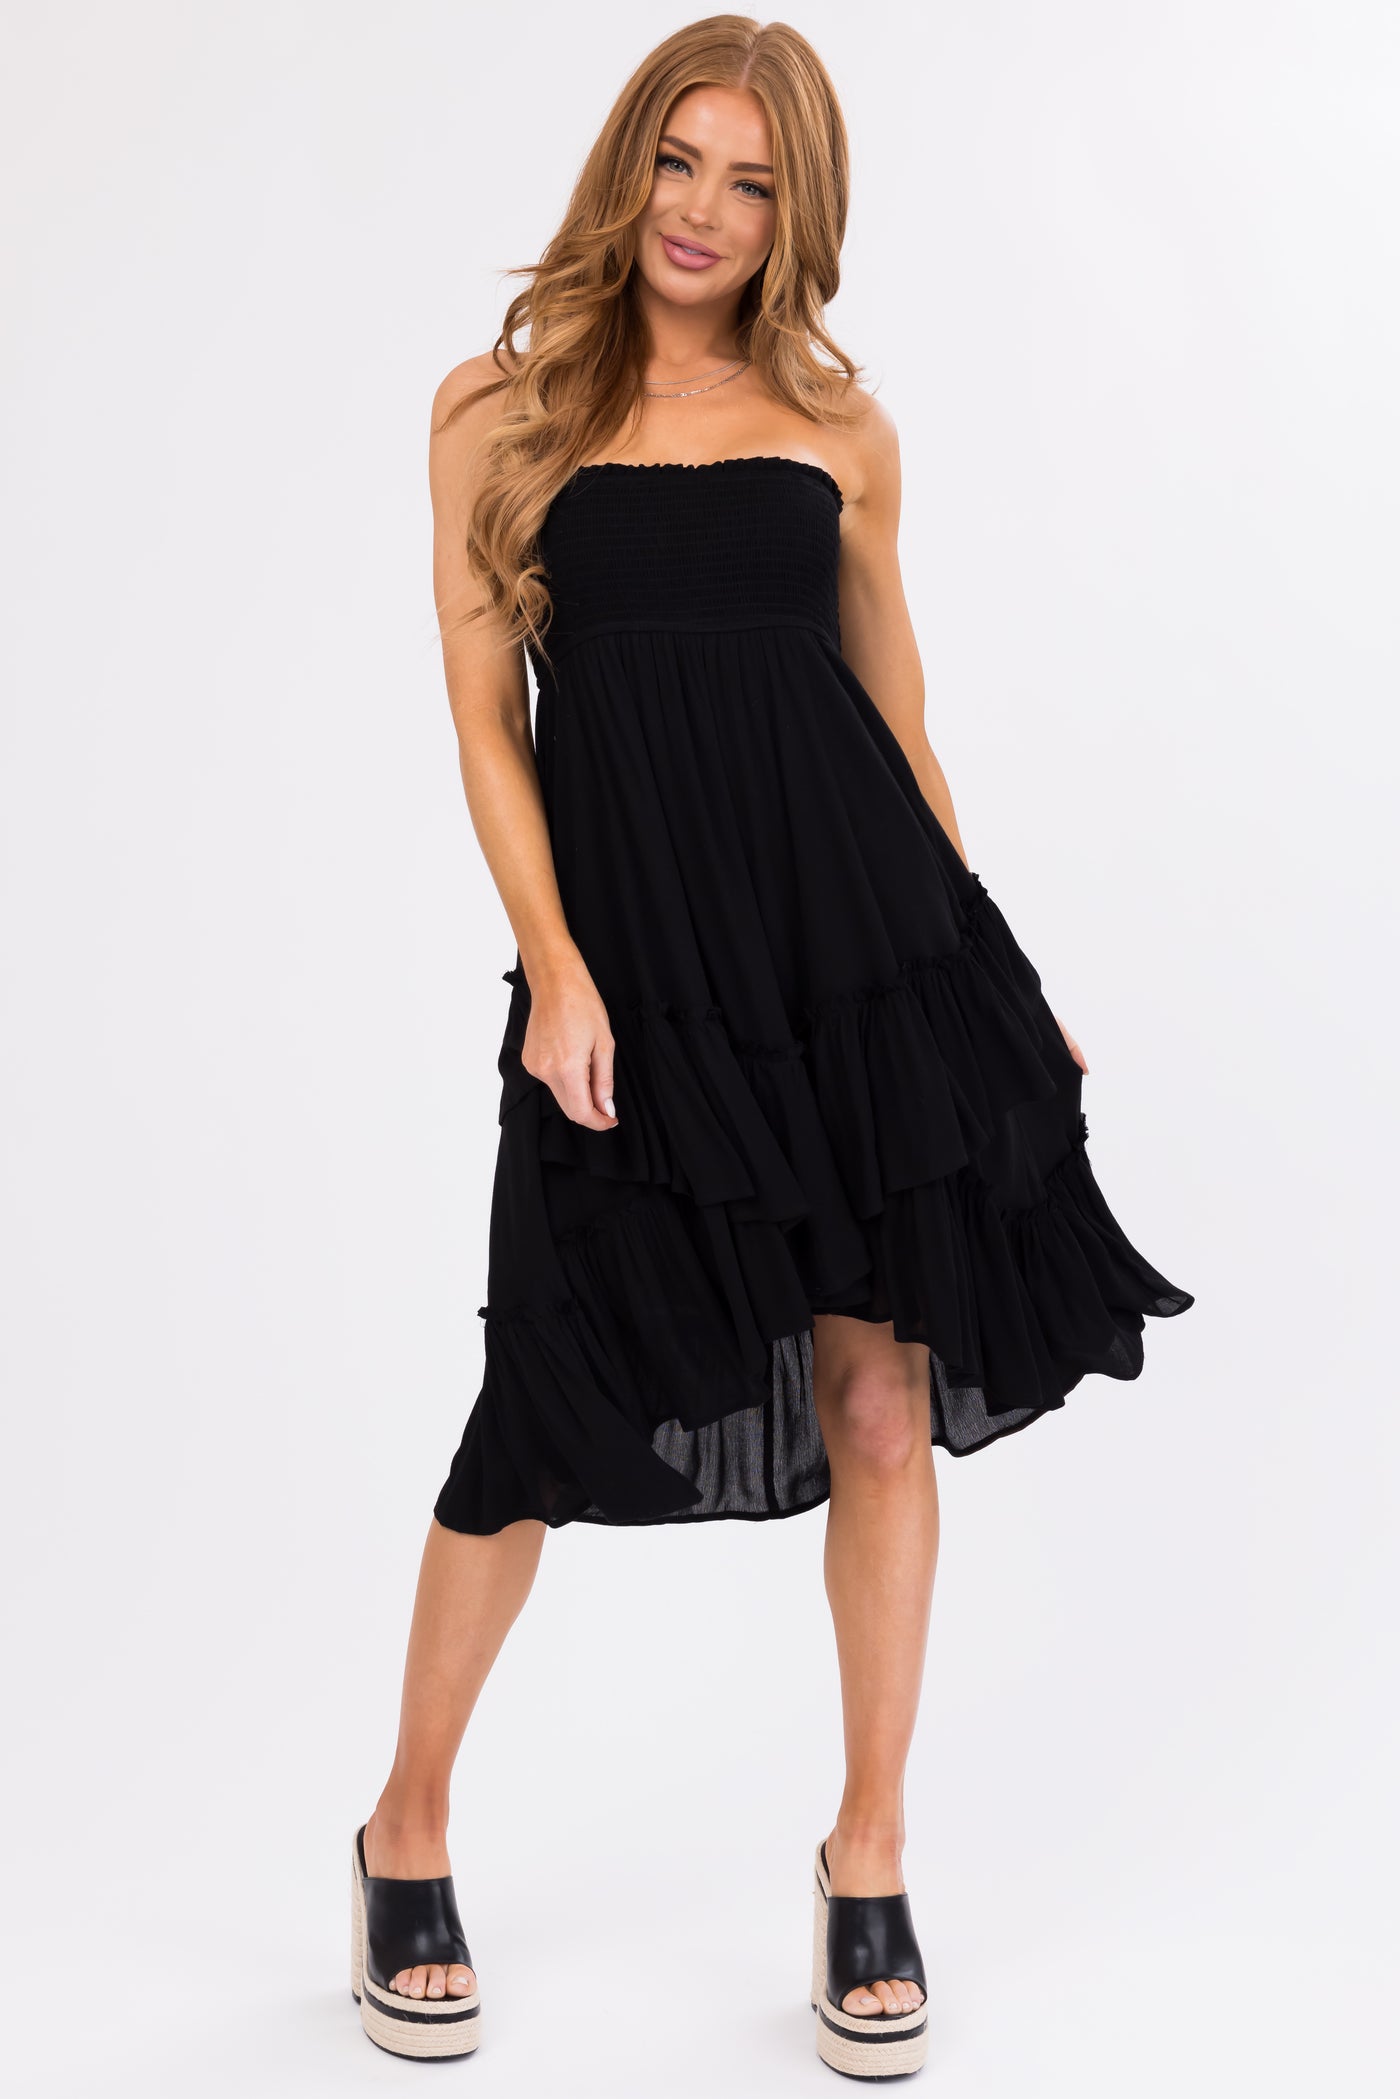 Black Smocked Convertible Midi Skirt Short Dress